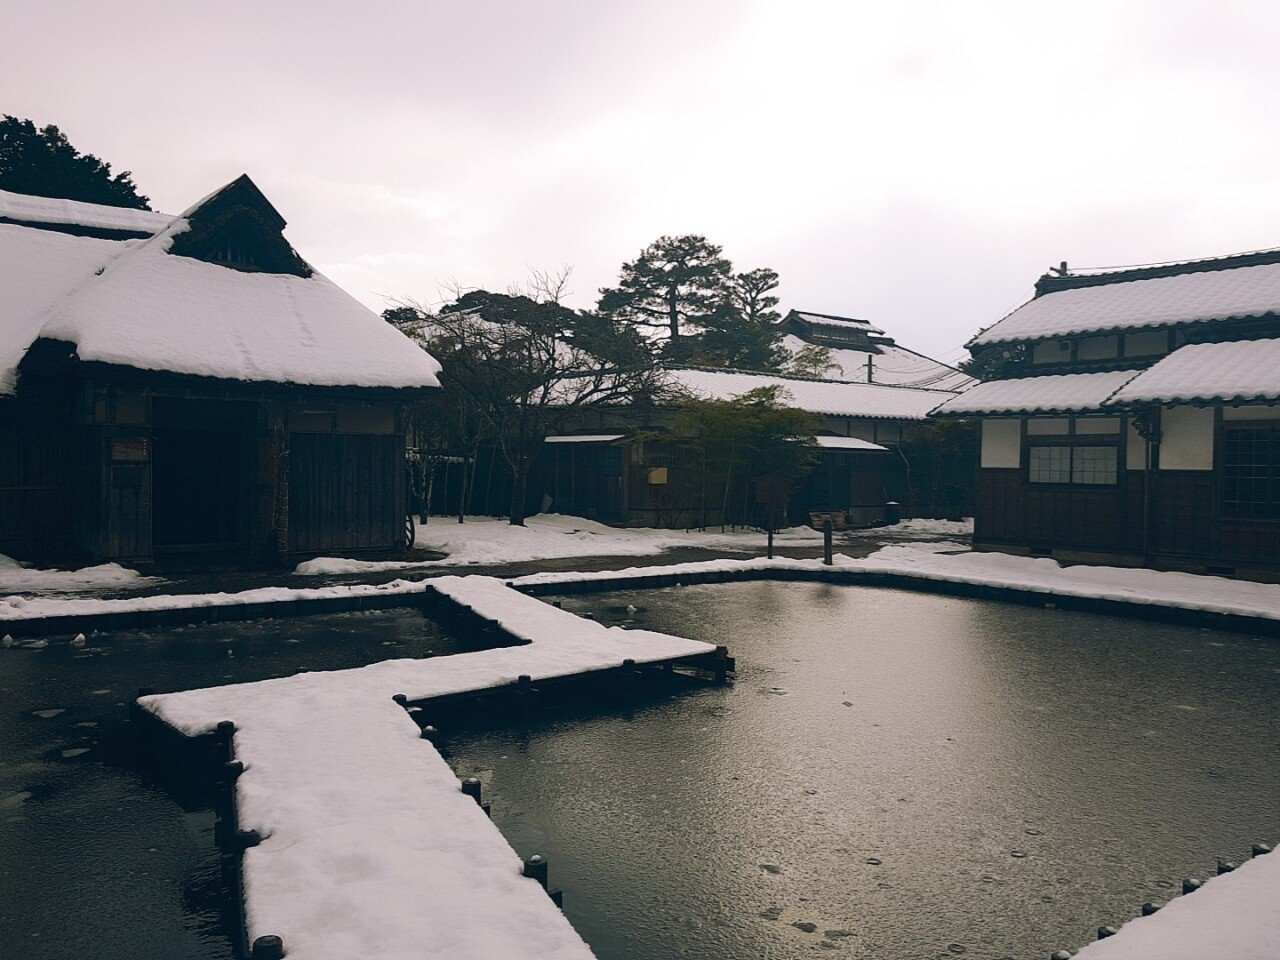 O2Cam_20190129133436.jpg 눈으로 덮인 겨울 니가타&나가노 여행기(1) (스압?)